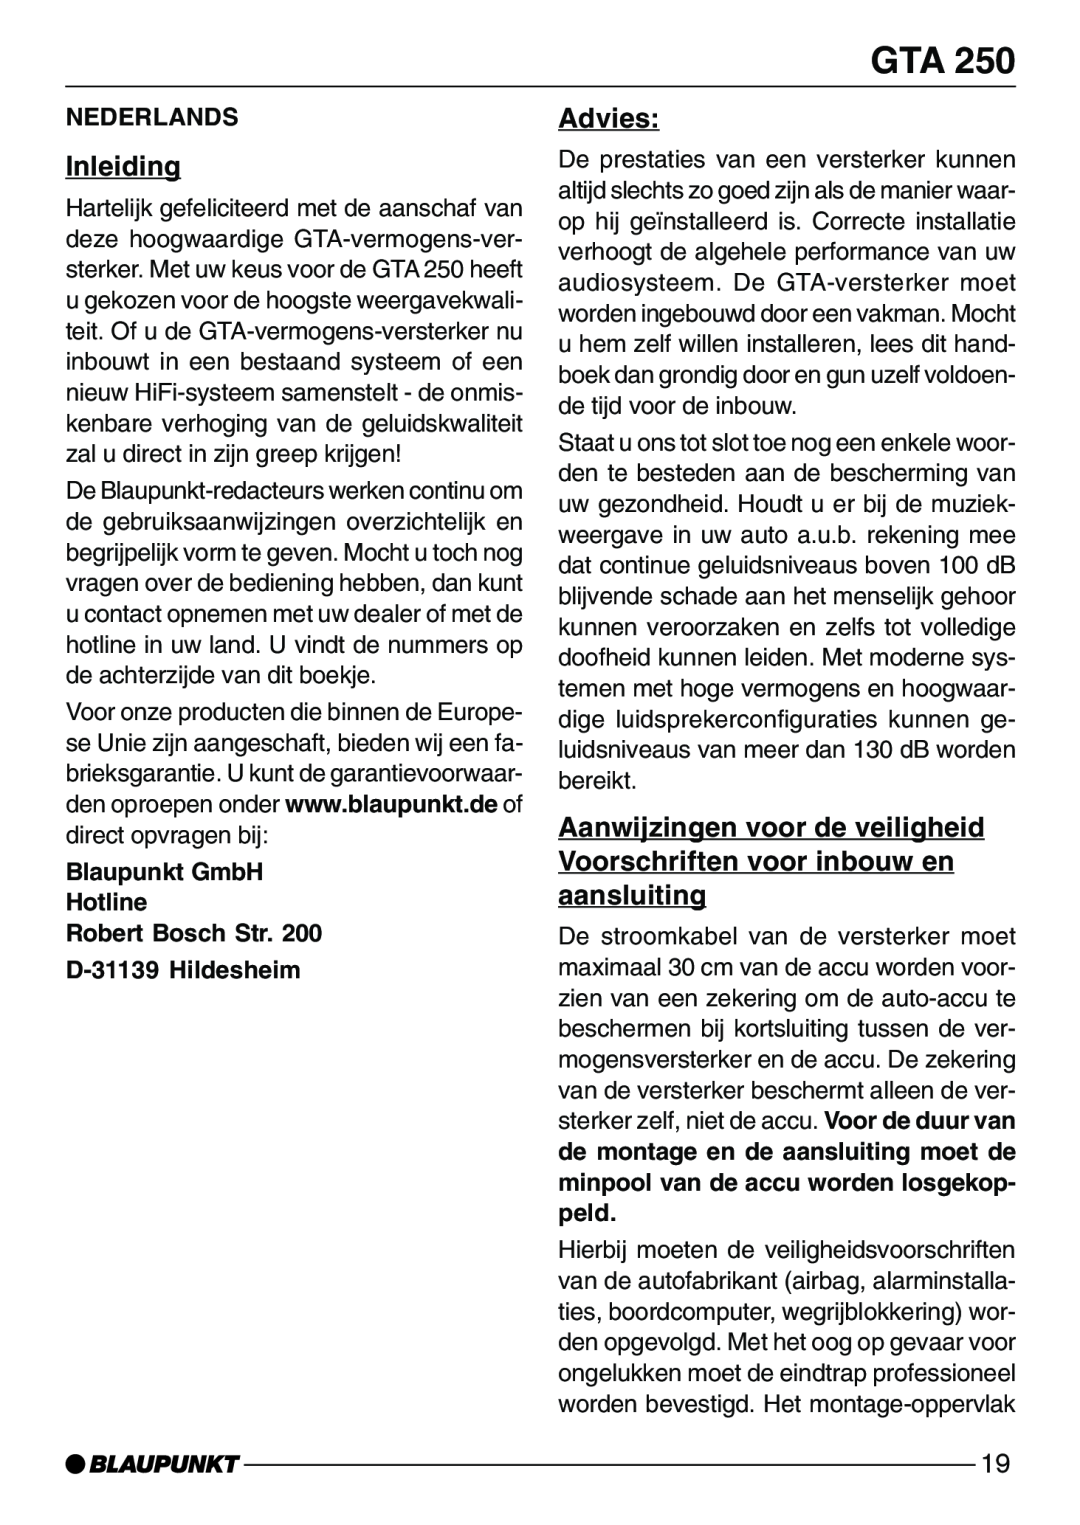 Blaupunkt GTA 250 Inleiding, Advies, Nederlands, Blaupunkt GmbH Hotline Robert Bosch Str, D-31139Hildesheim 